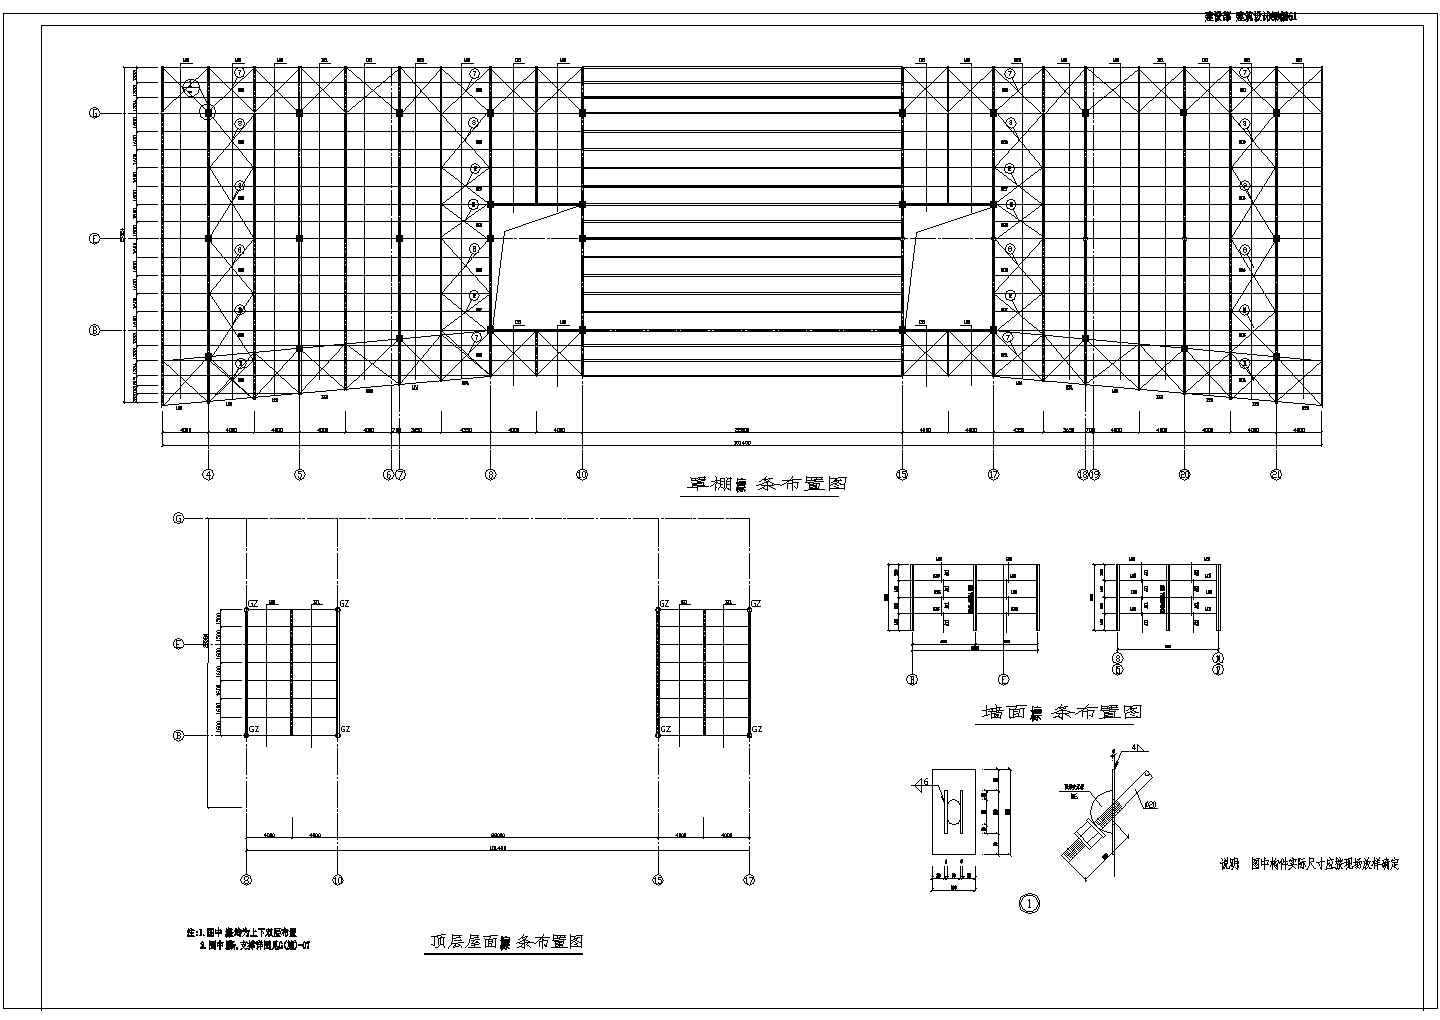 钢结构教学楼工程设计图 节点详细